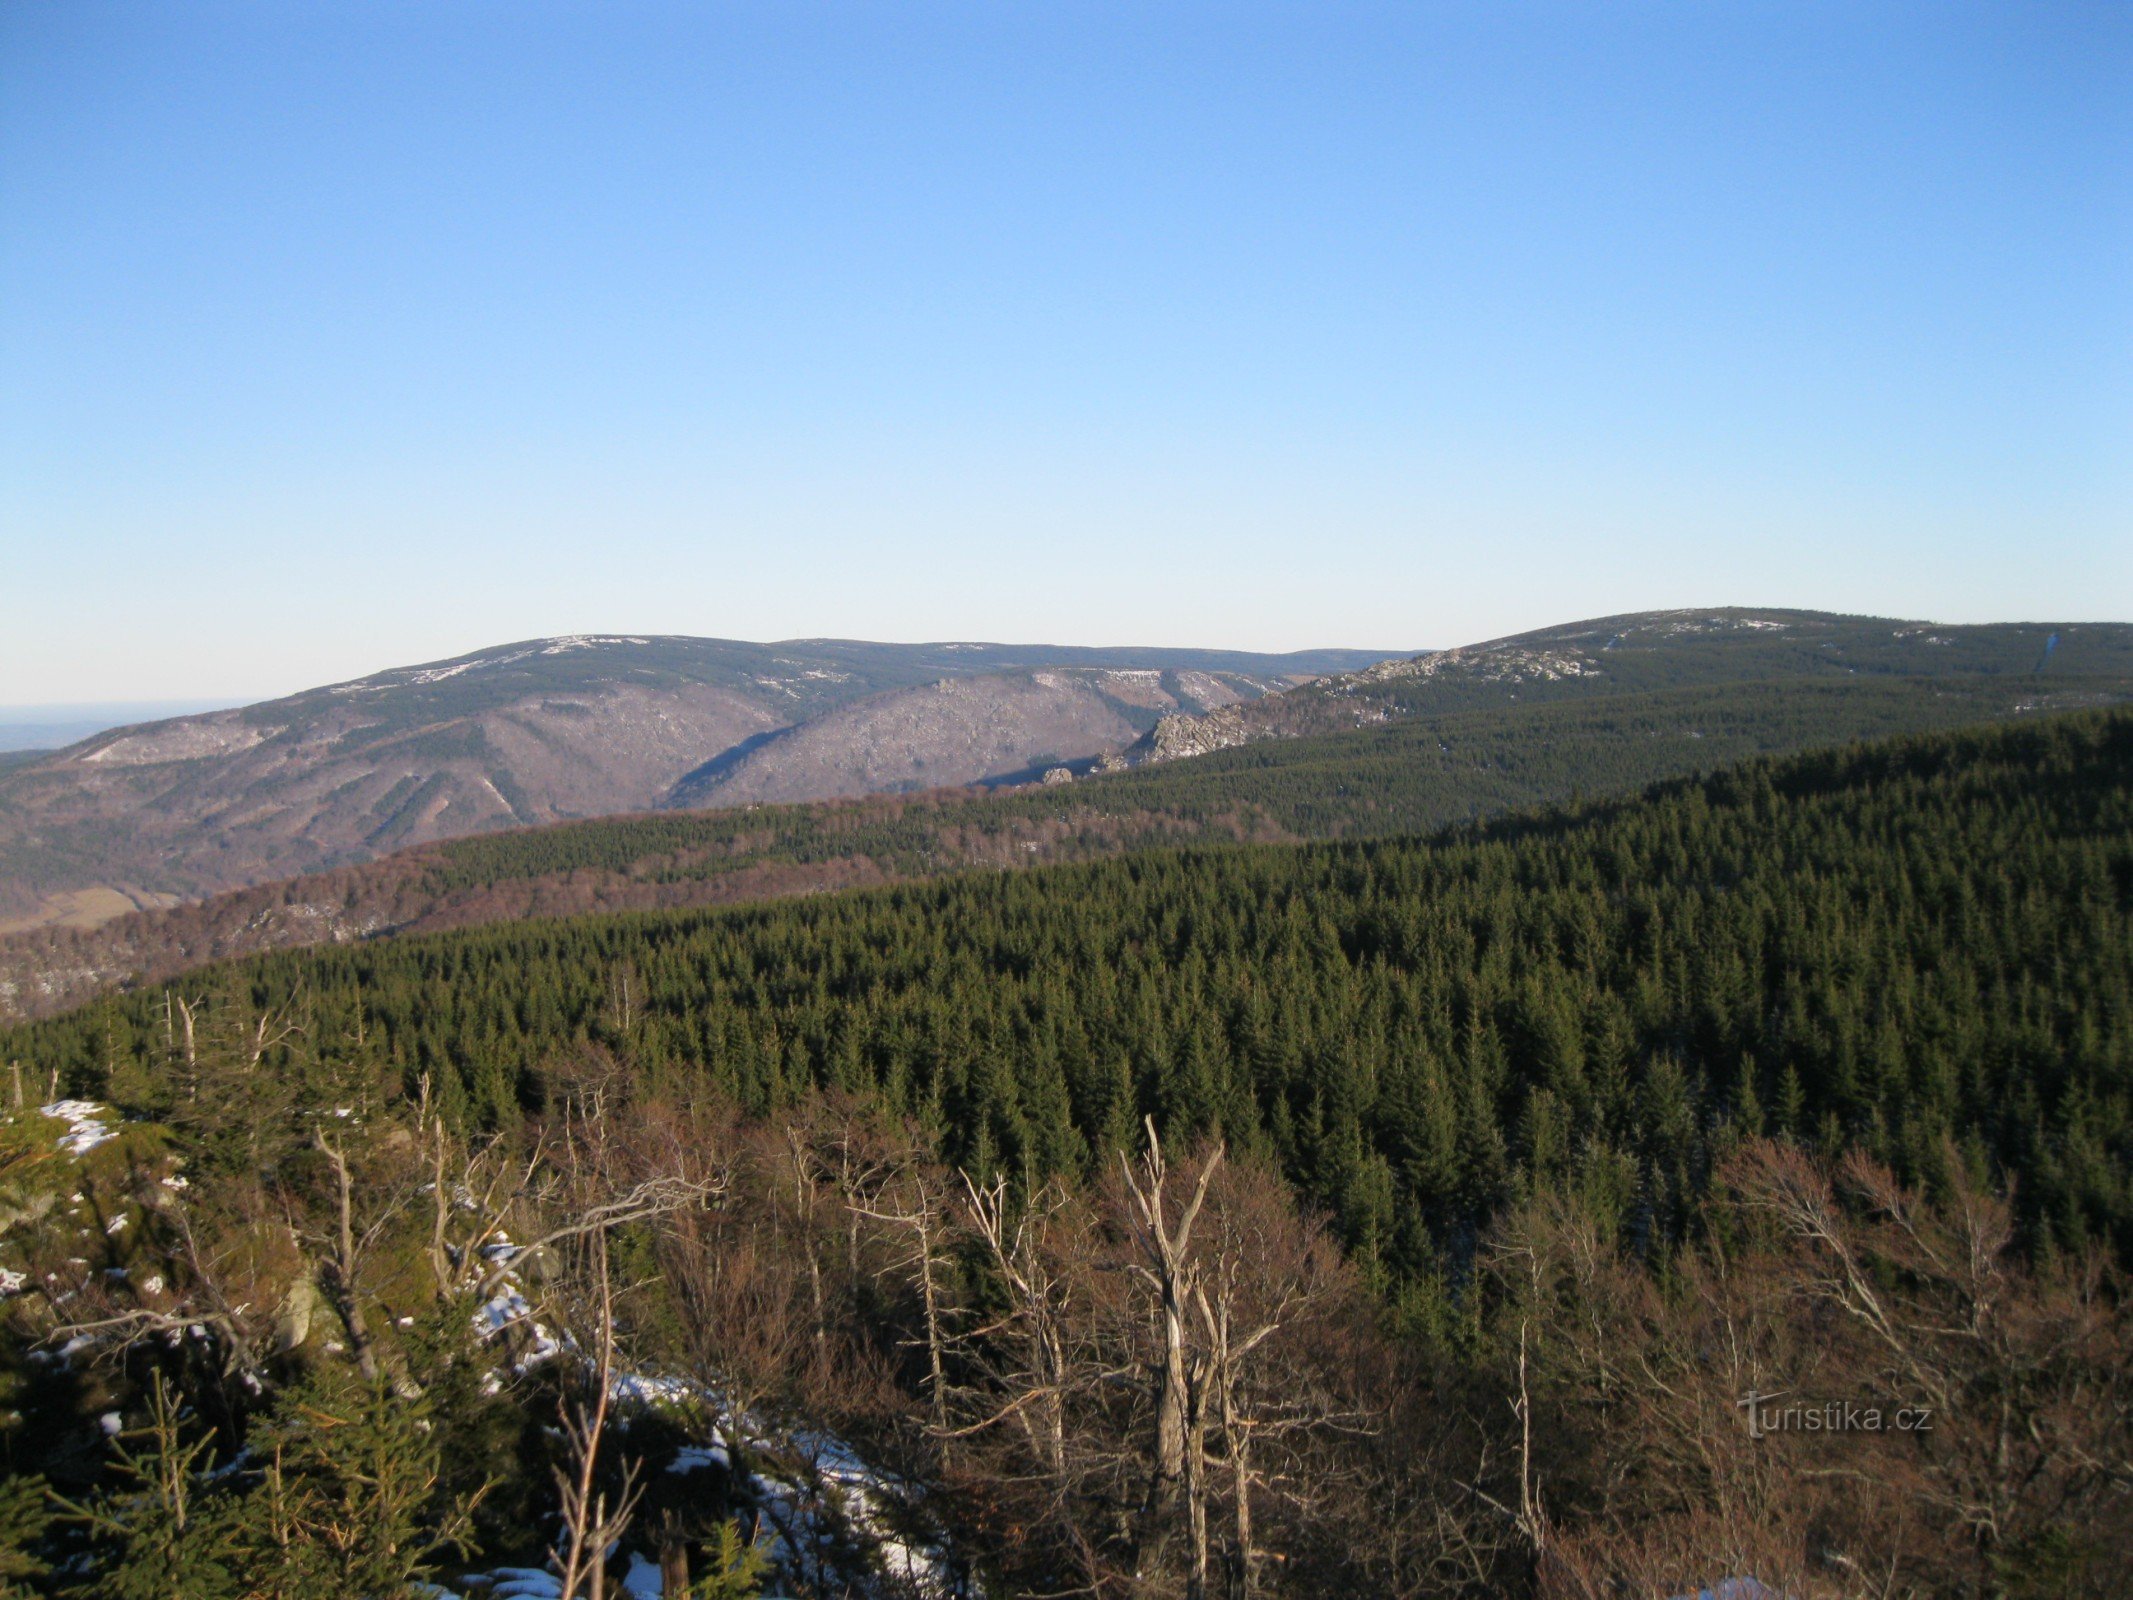 Utsikt över Smrk (det högsta berget i den tjeckiska delen av Jizerabergen).